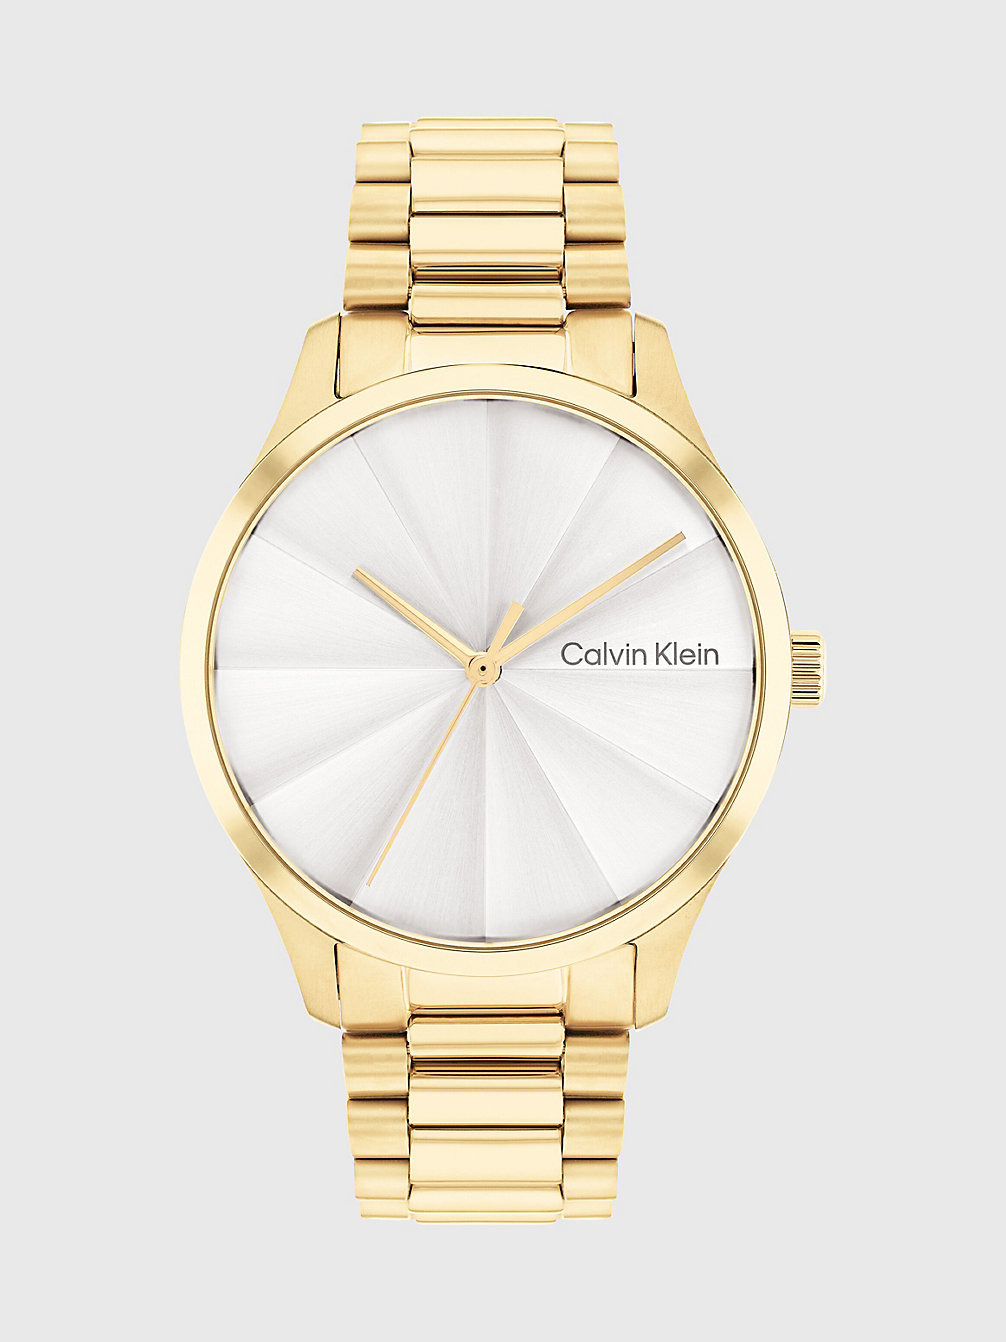 Reloj - Burst > GOLD > undefined unisex > Calvin Klein